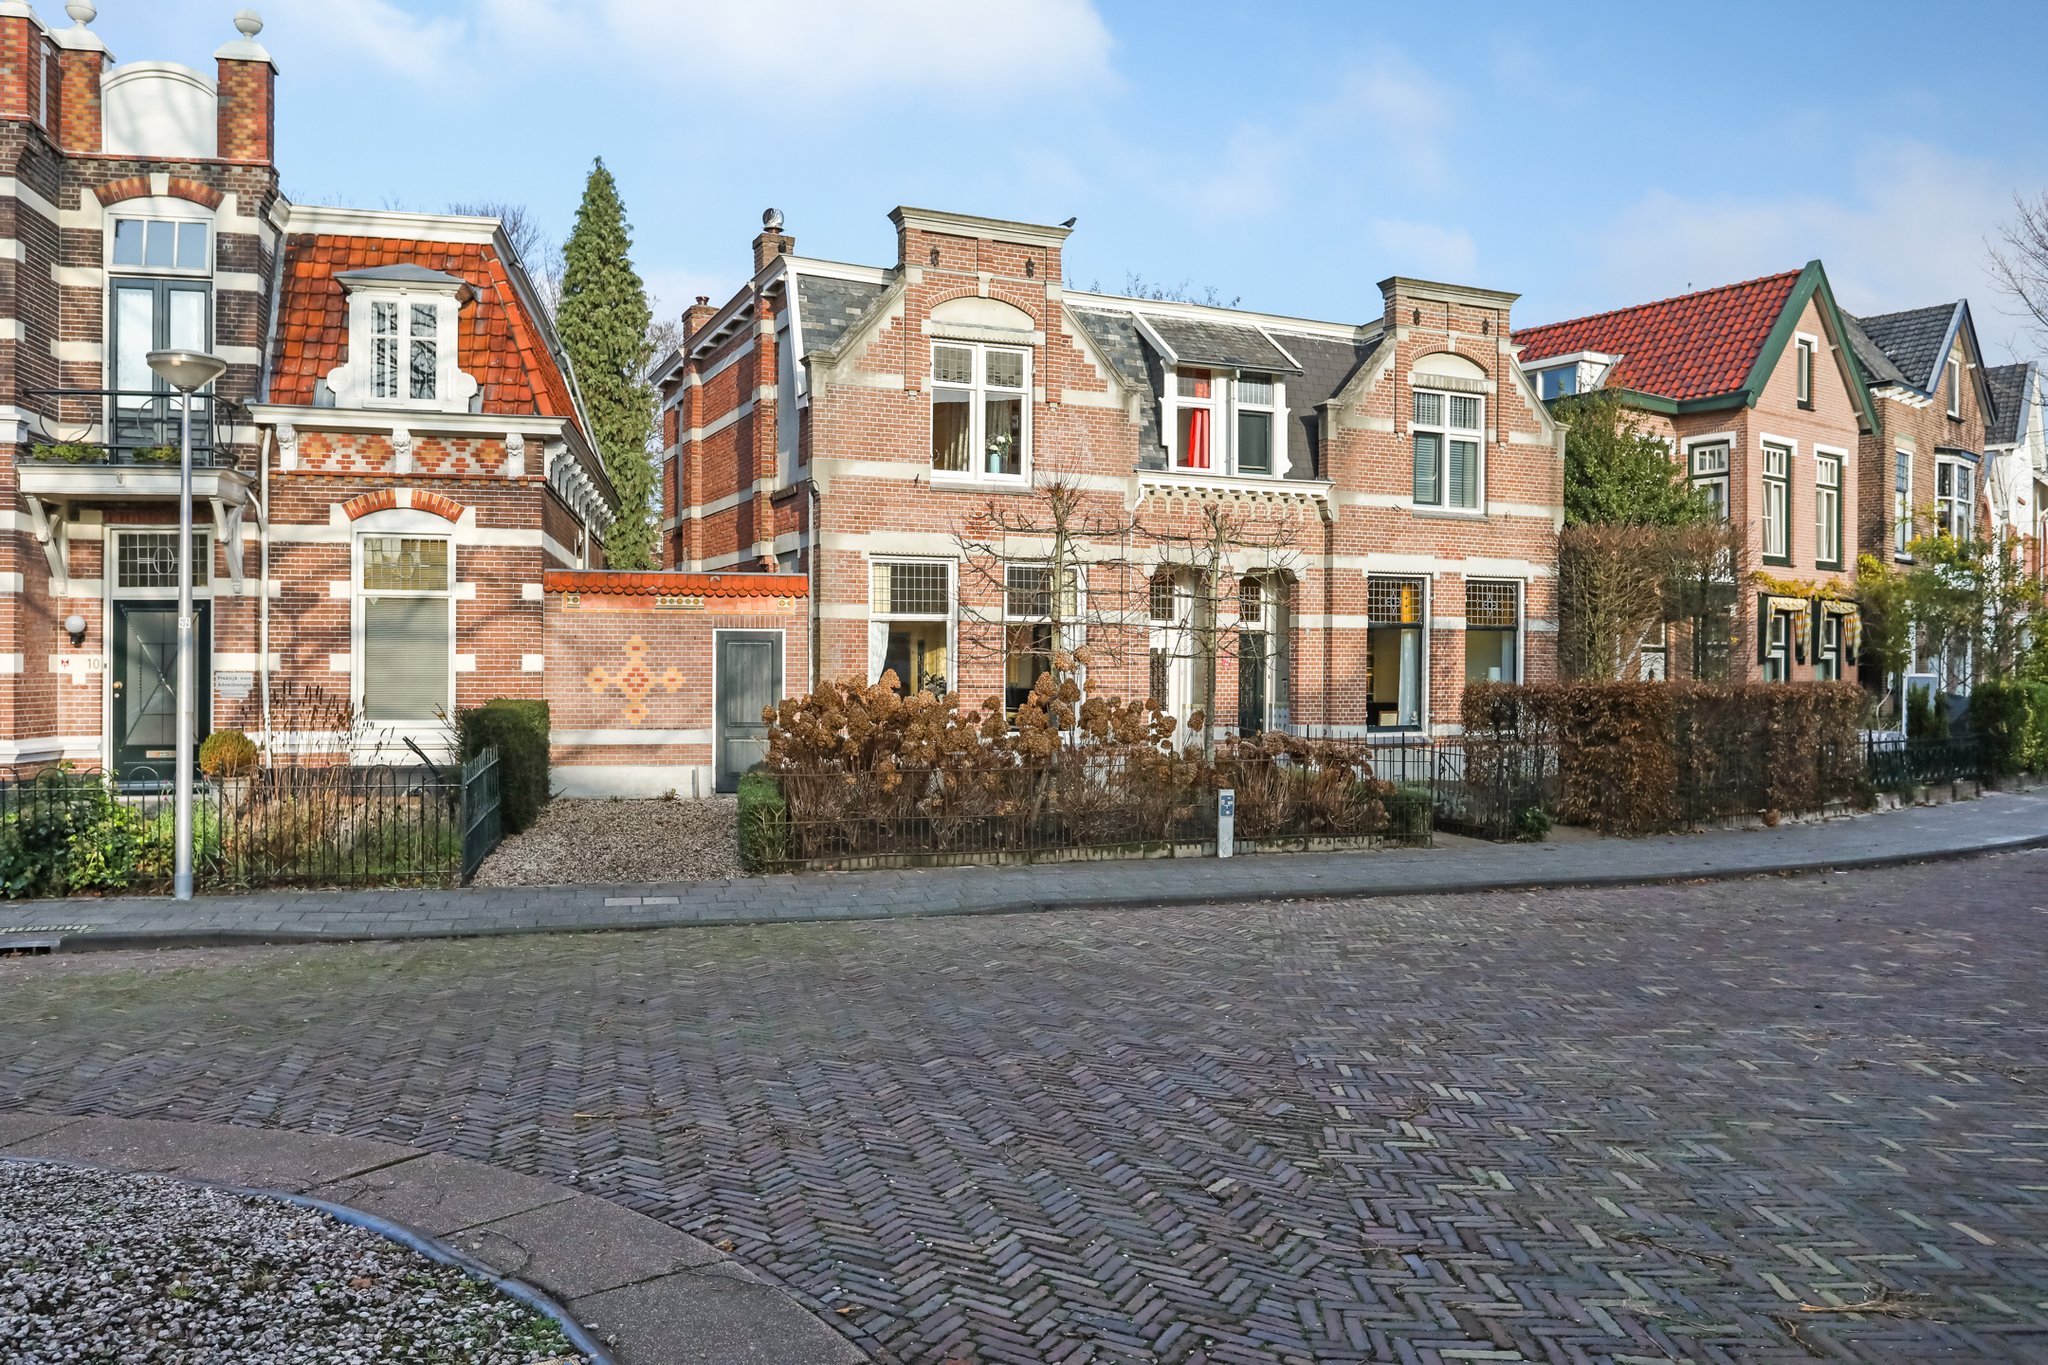 Frederik van Blankenheymstraat 12 in Vermeerkwartier / Leusderkwartier / Bergkwartier / Amersfoort, Amersfoort